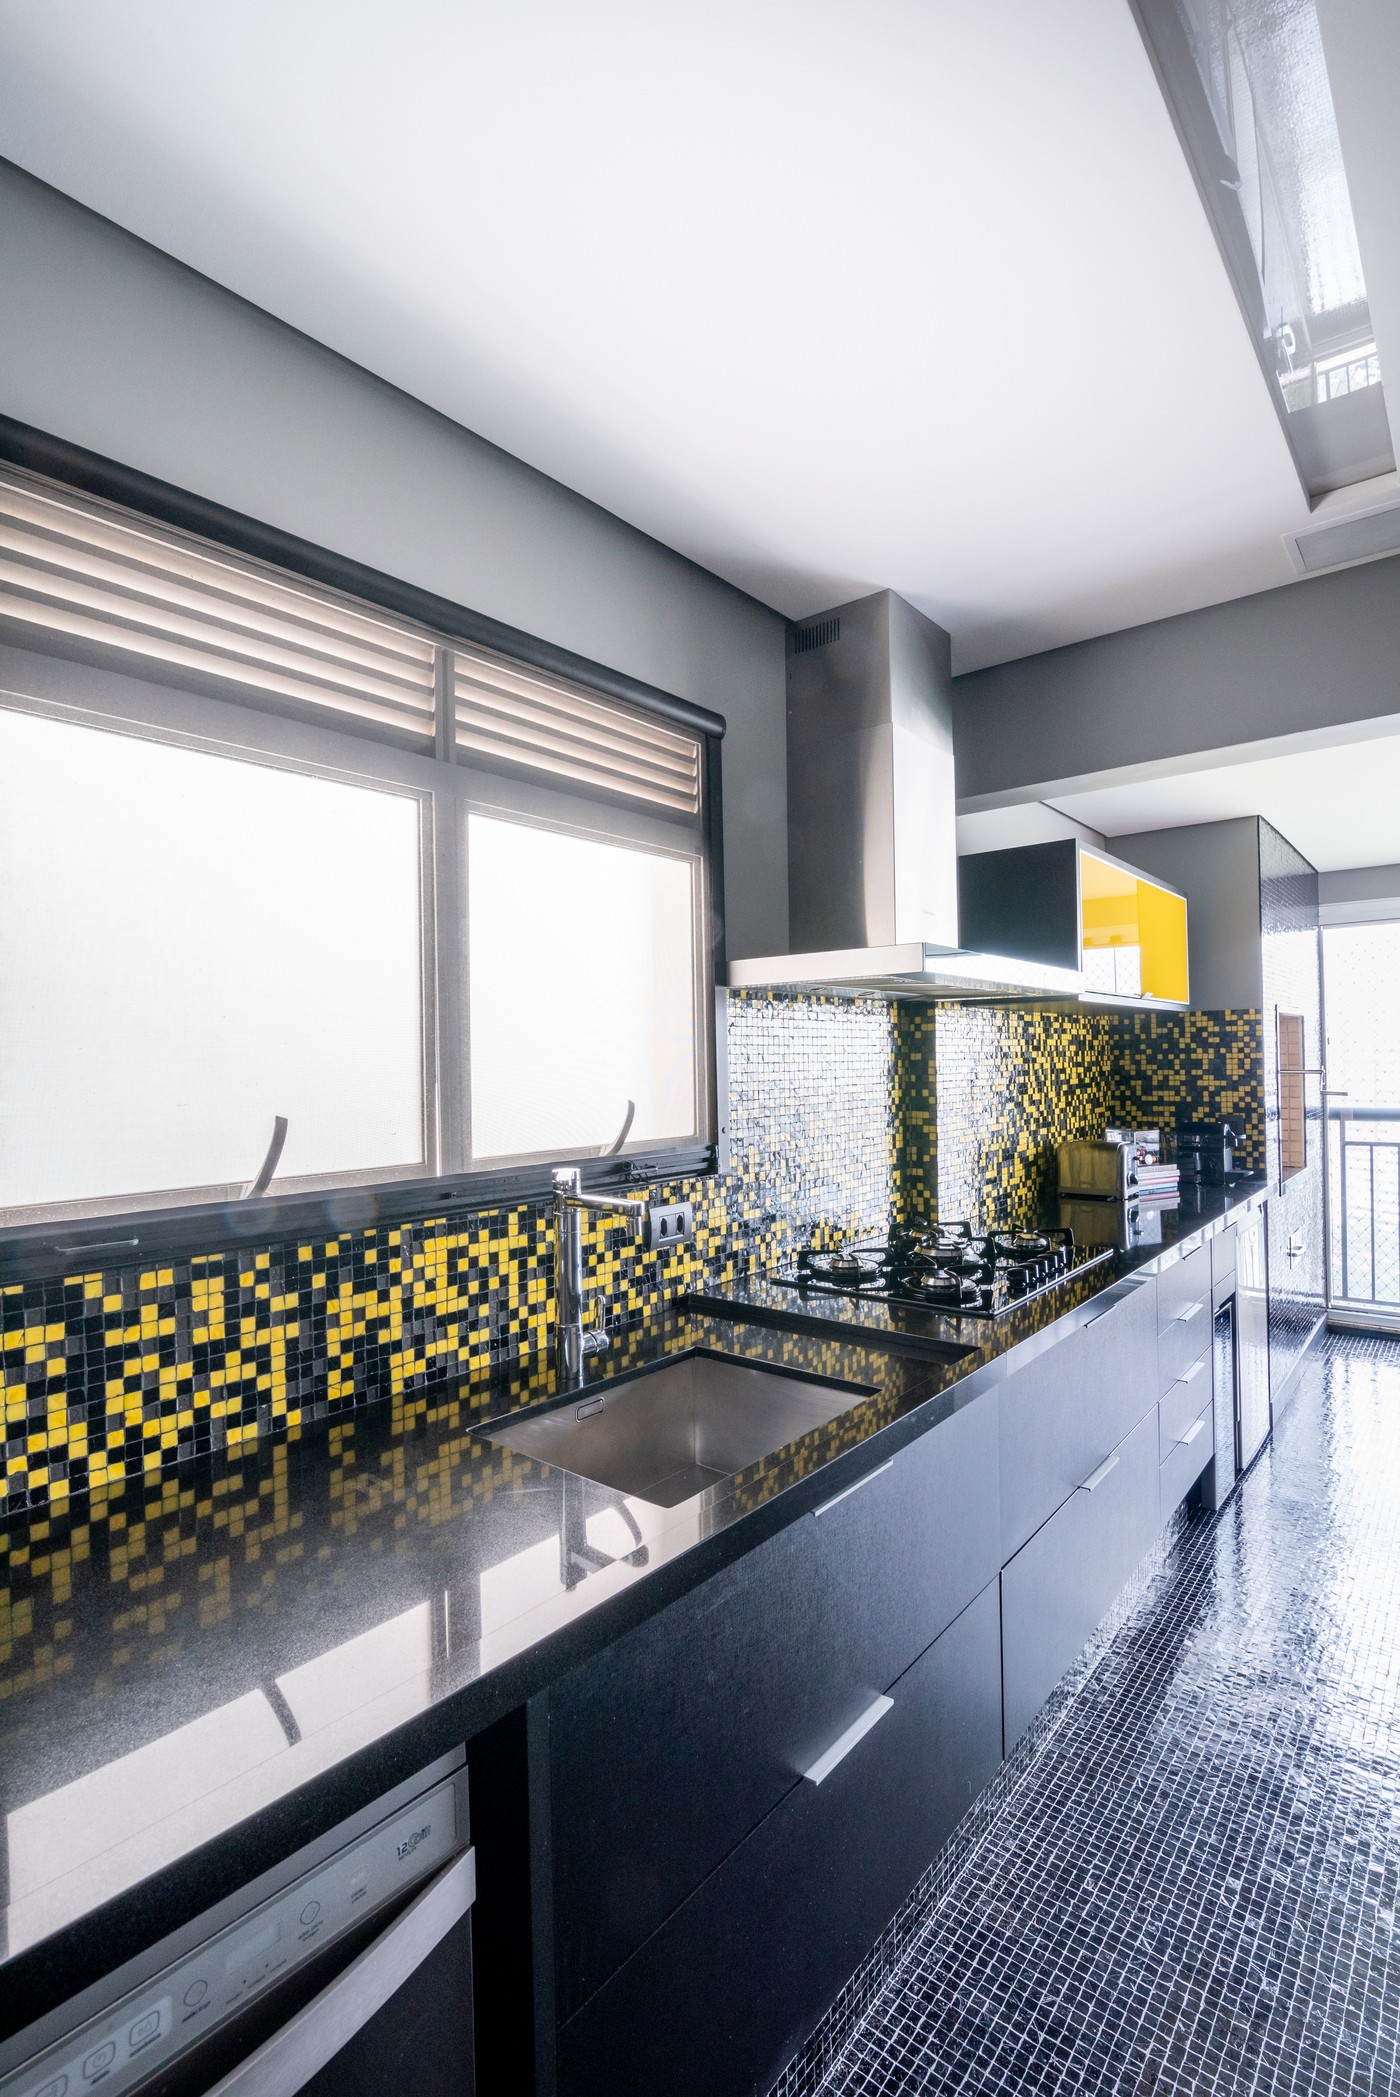 Décor do dia: cozinha integrada à varanda tem decoração em preto e amarelo (Foto: Julia Herman)